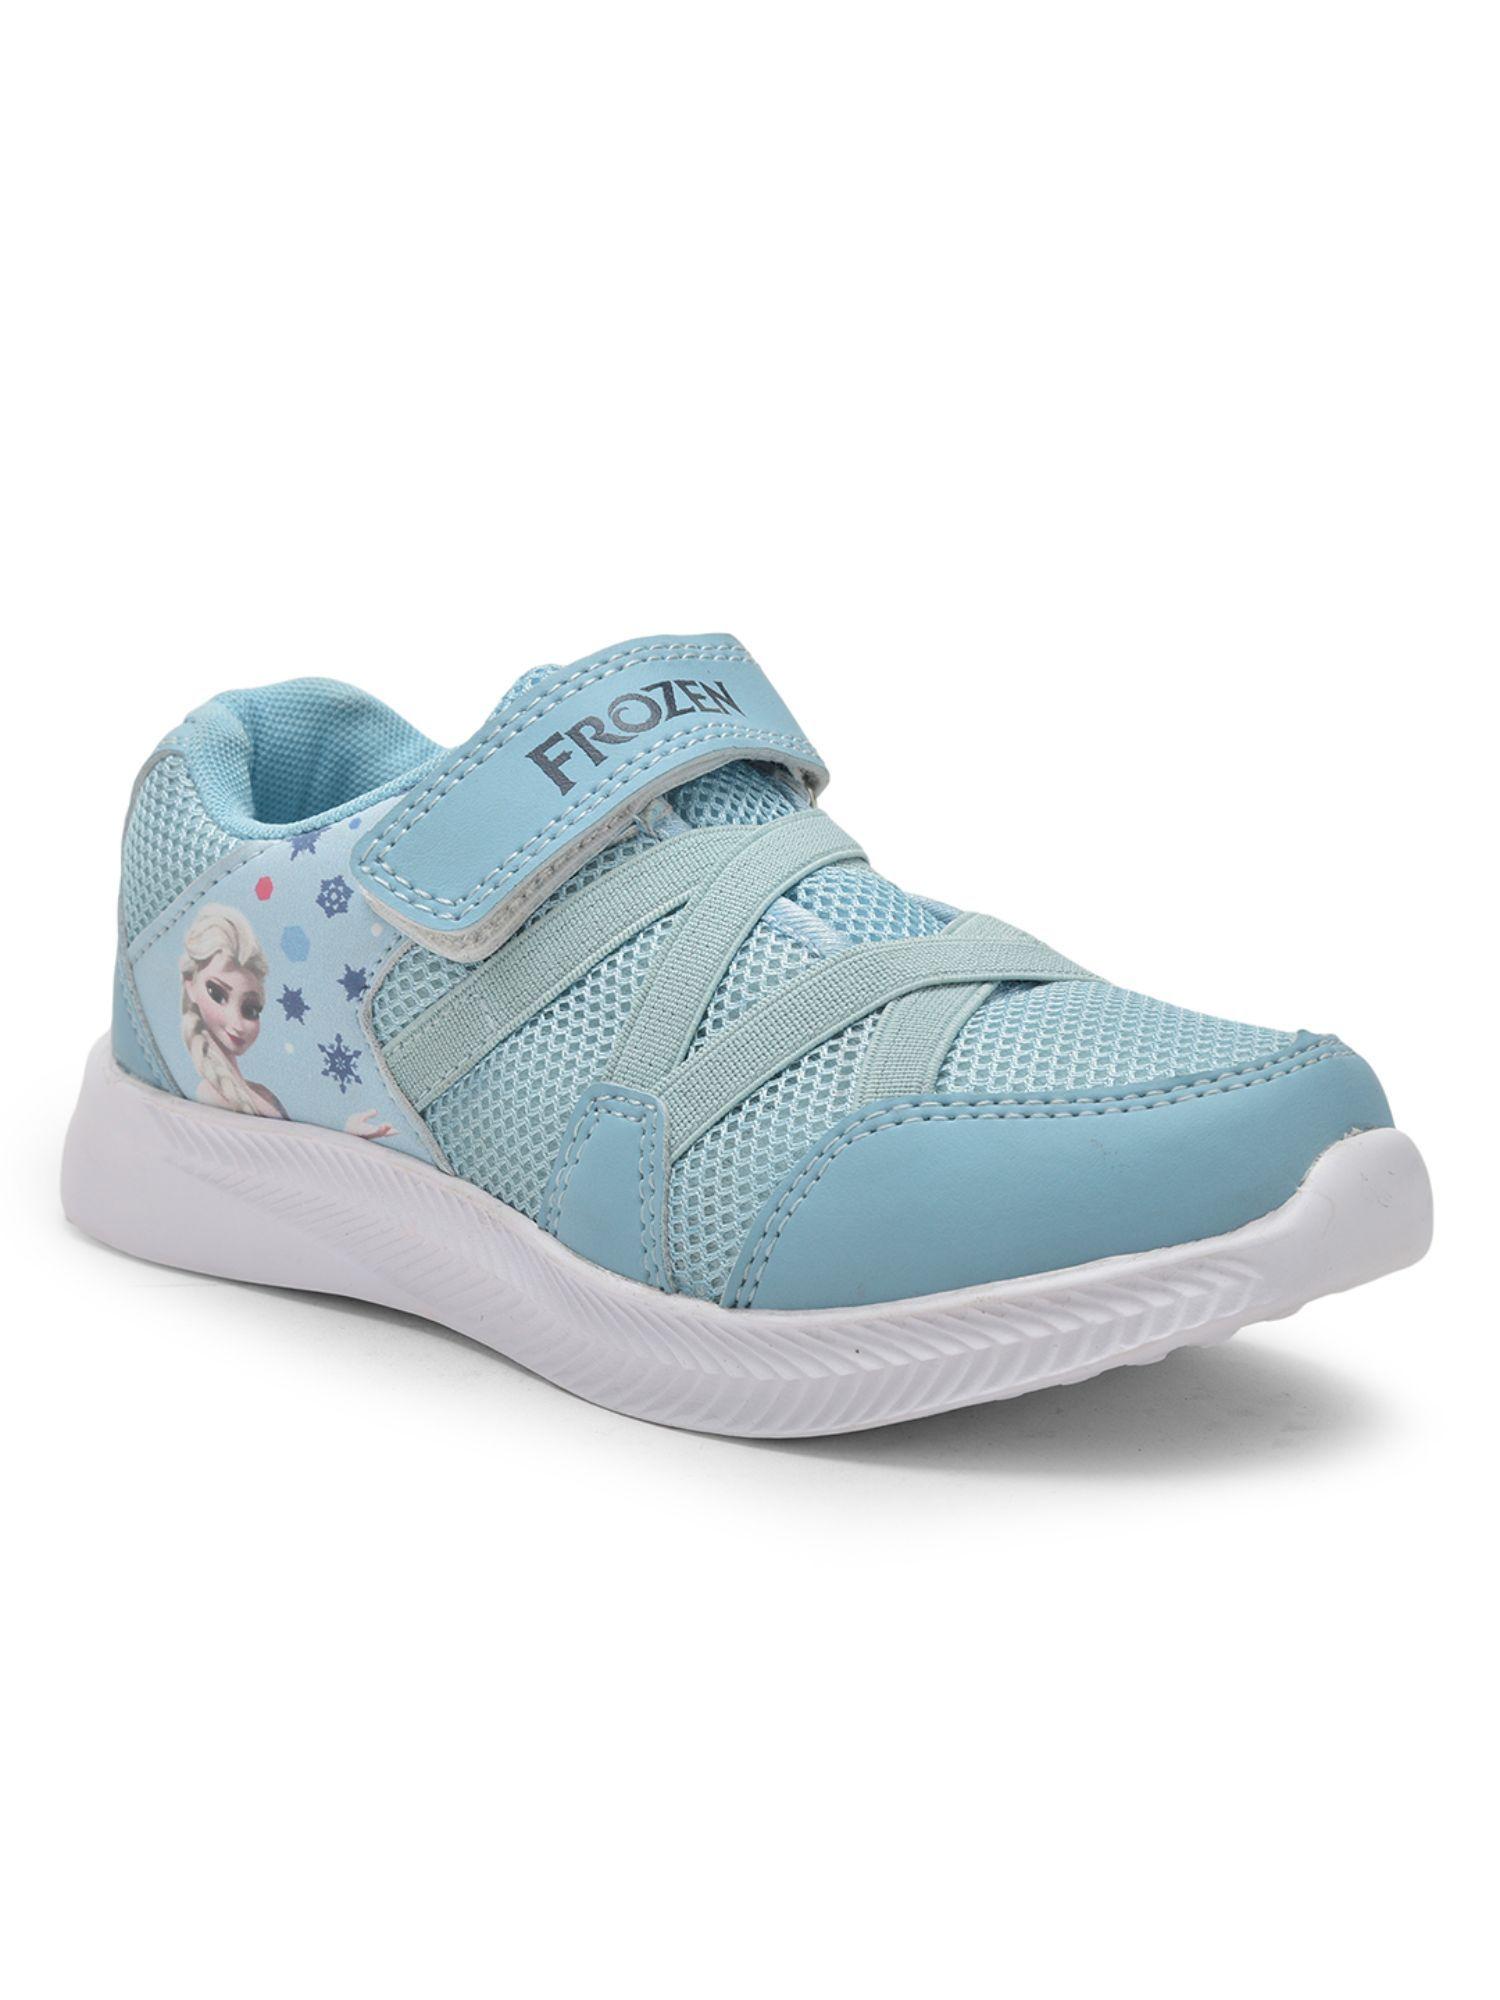 disney-frozen-kids-girls-sky-blue-sports-shoes